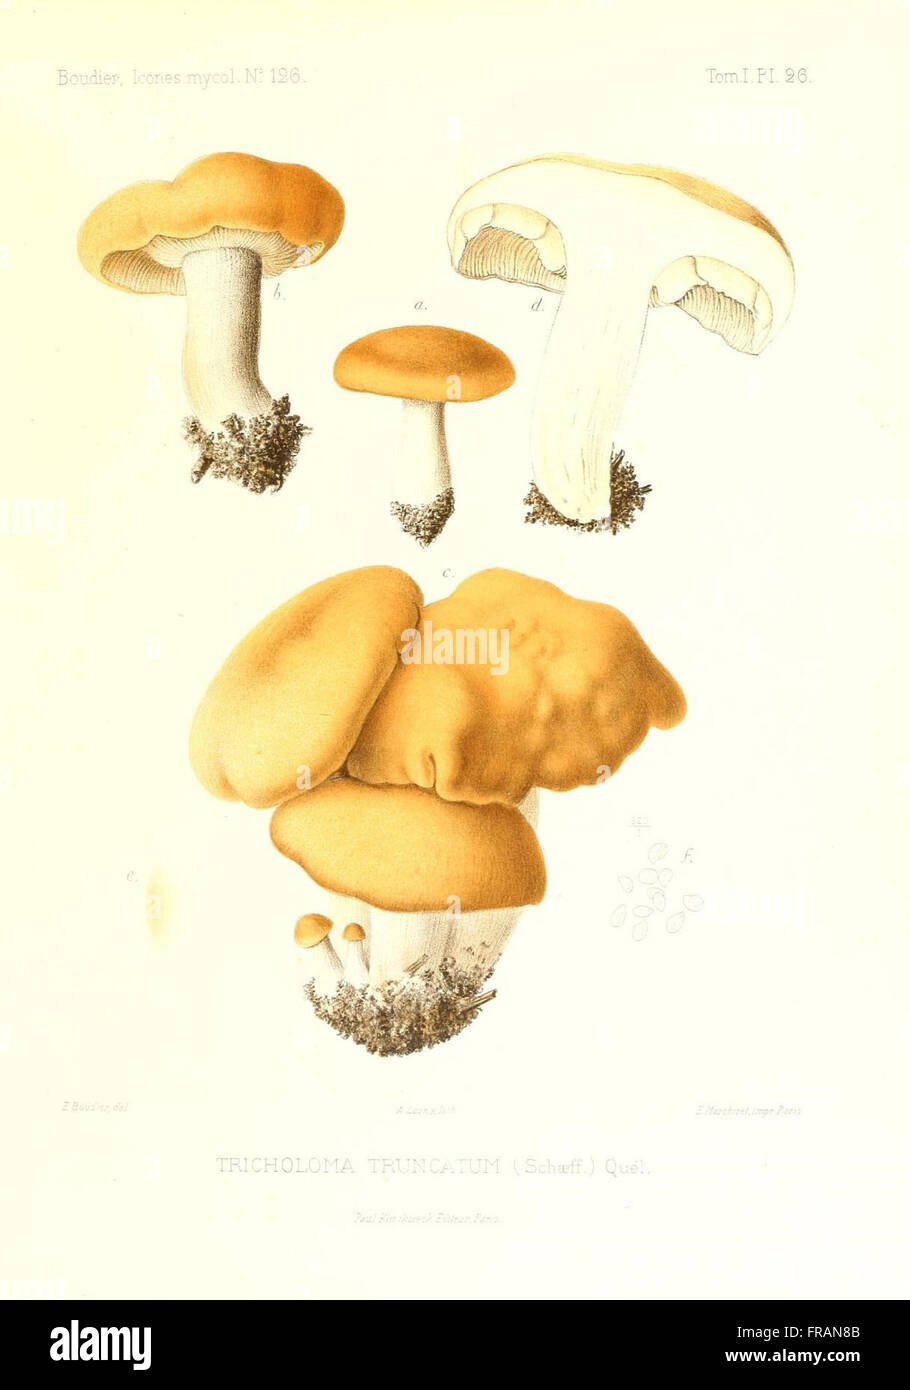 Icones mycologicC3A6, ou Iconographie des champignons de France principalement Discomycetes (Pl. 26) Stock Photo